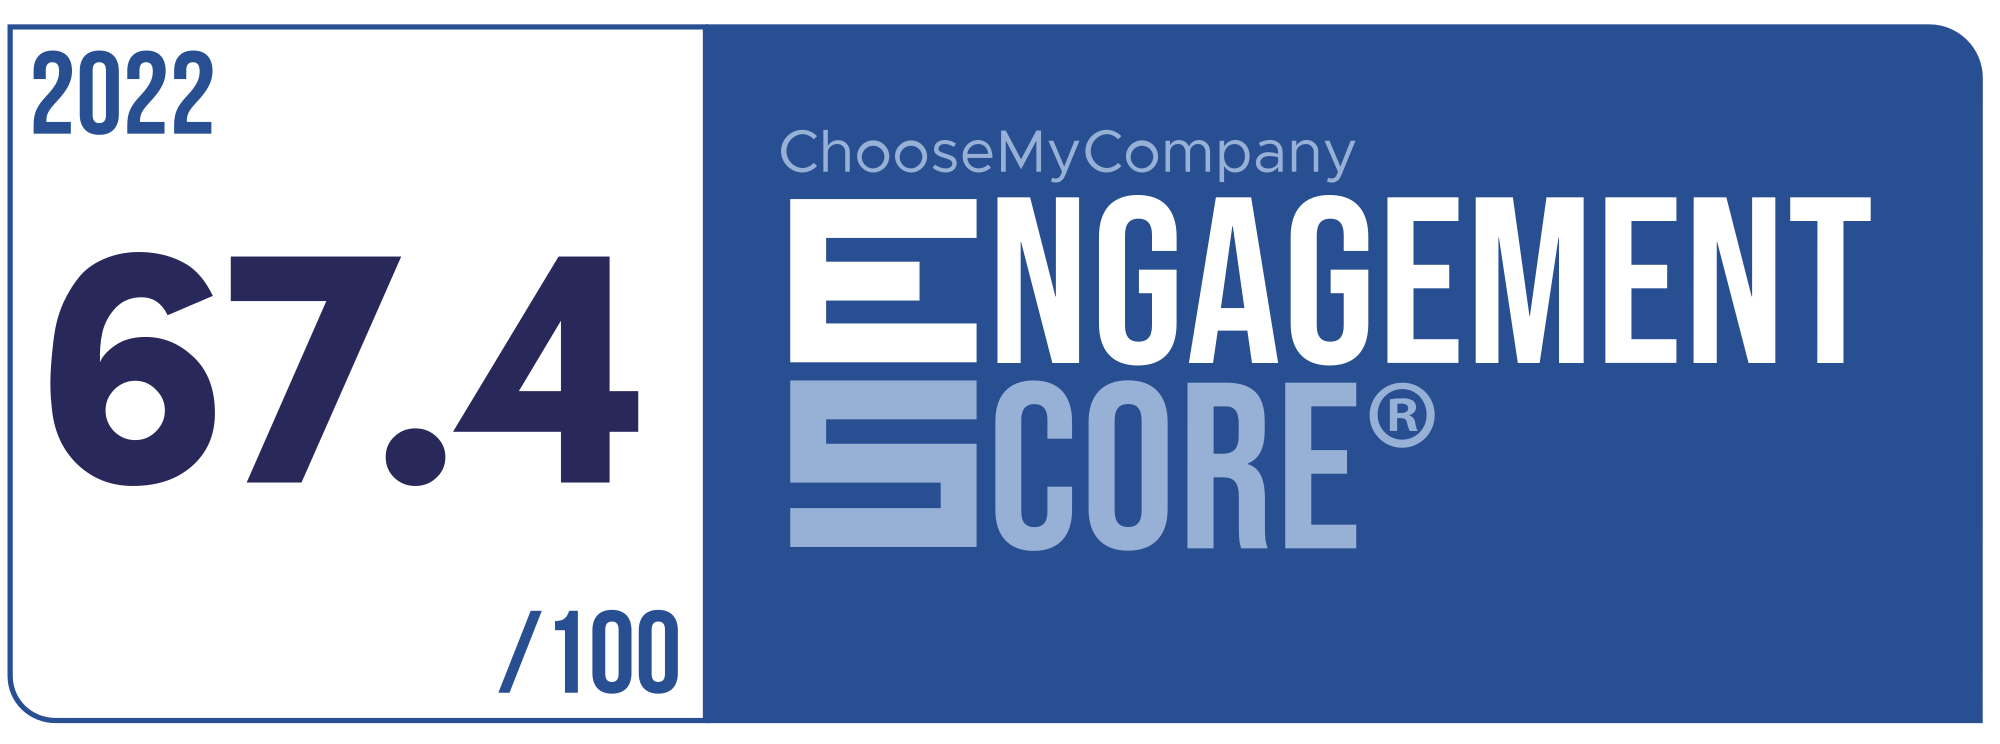 Label Engagement Score 2022 